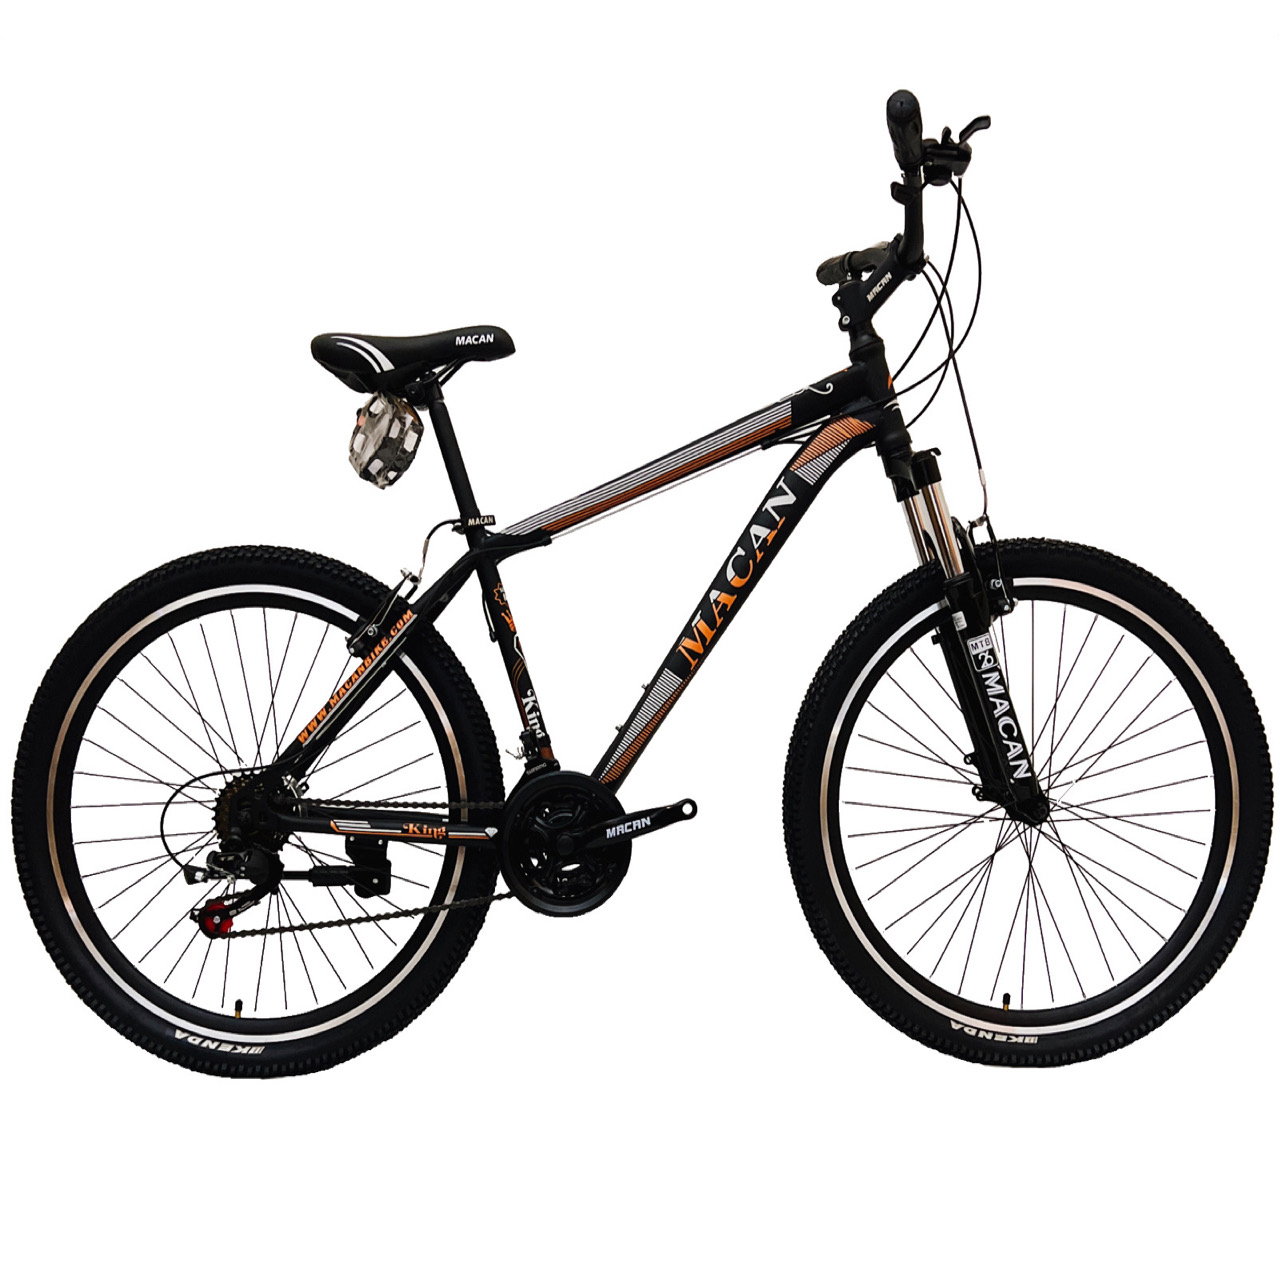 قیمت و مشخصات دوچرخه کوهستان ماکان مدل King سایز 26 - زیراکو